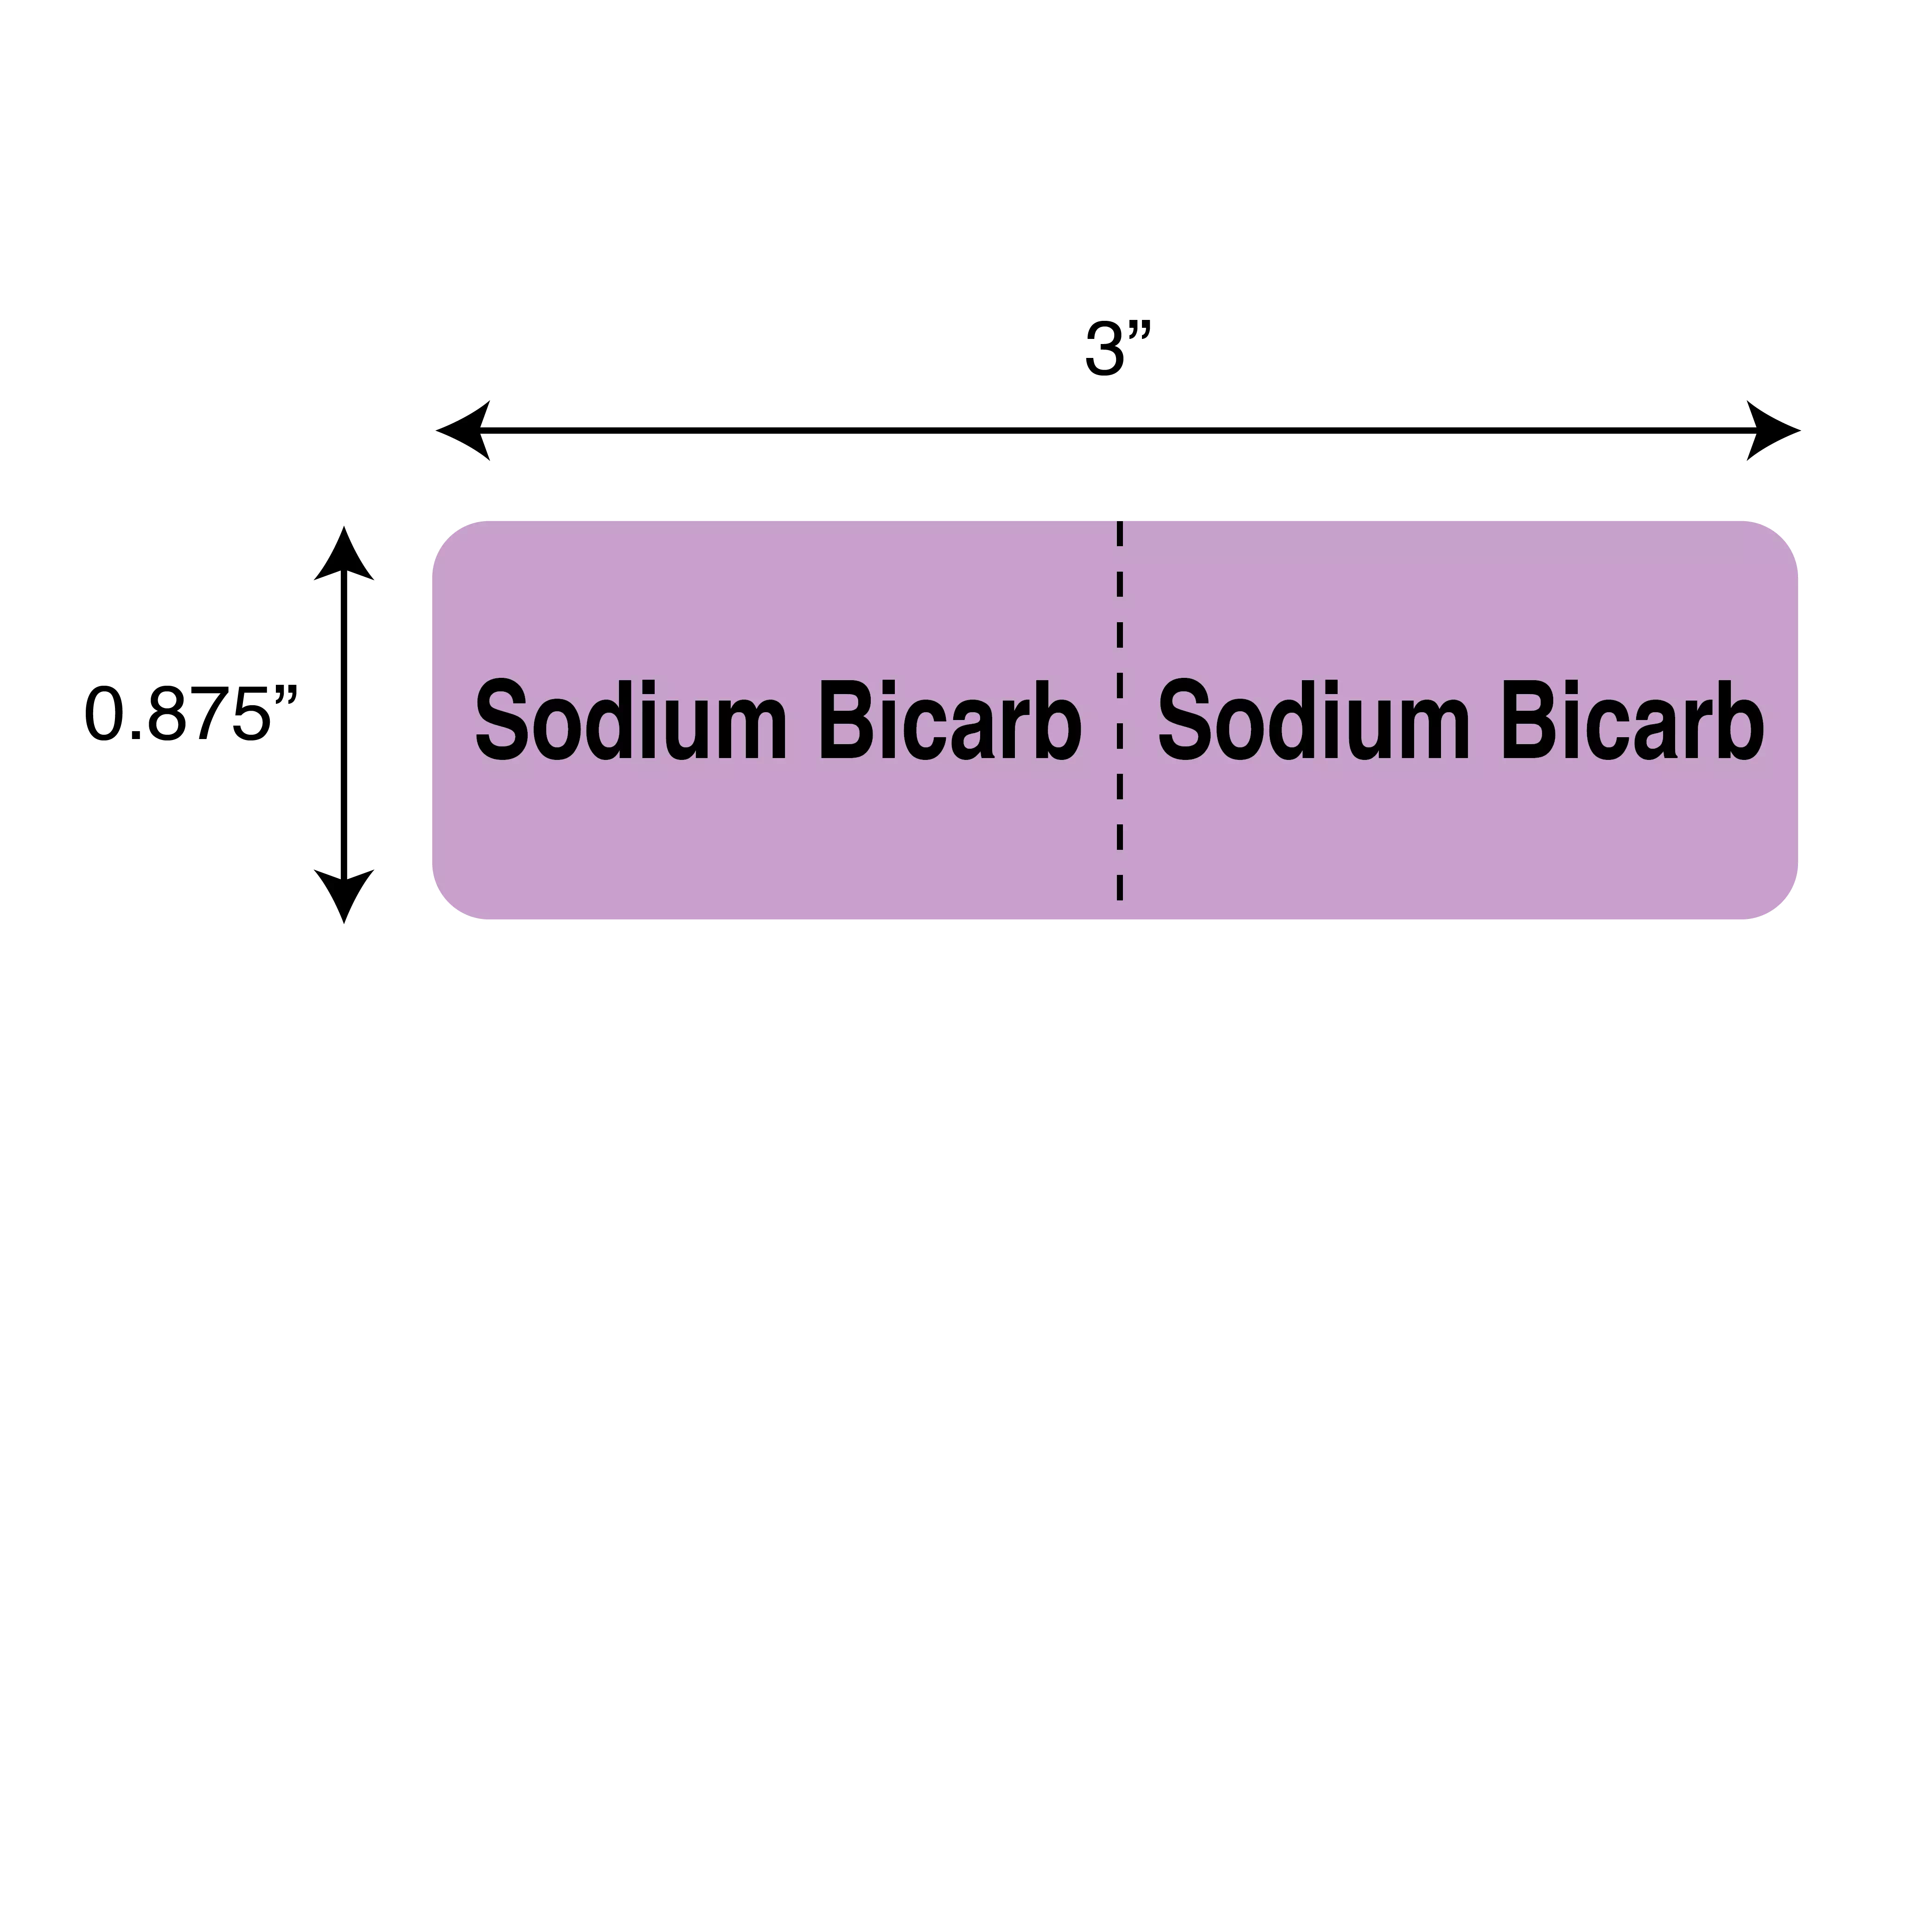 IV Drug Line Label - Sodium Bicarb/Sodium Bicarb